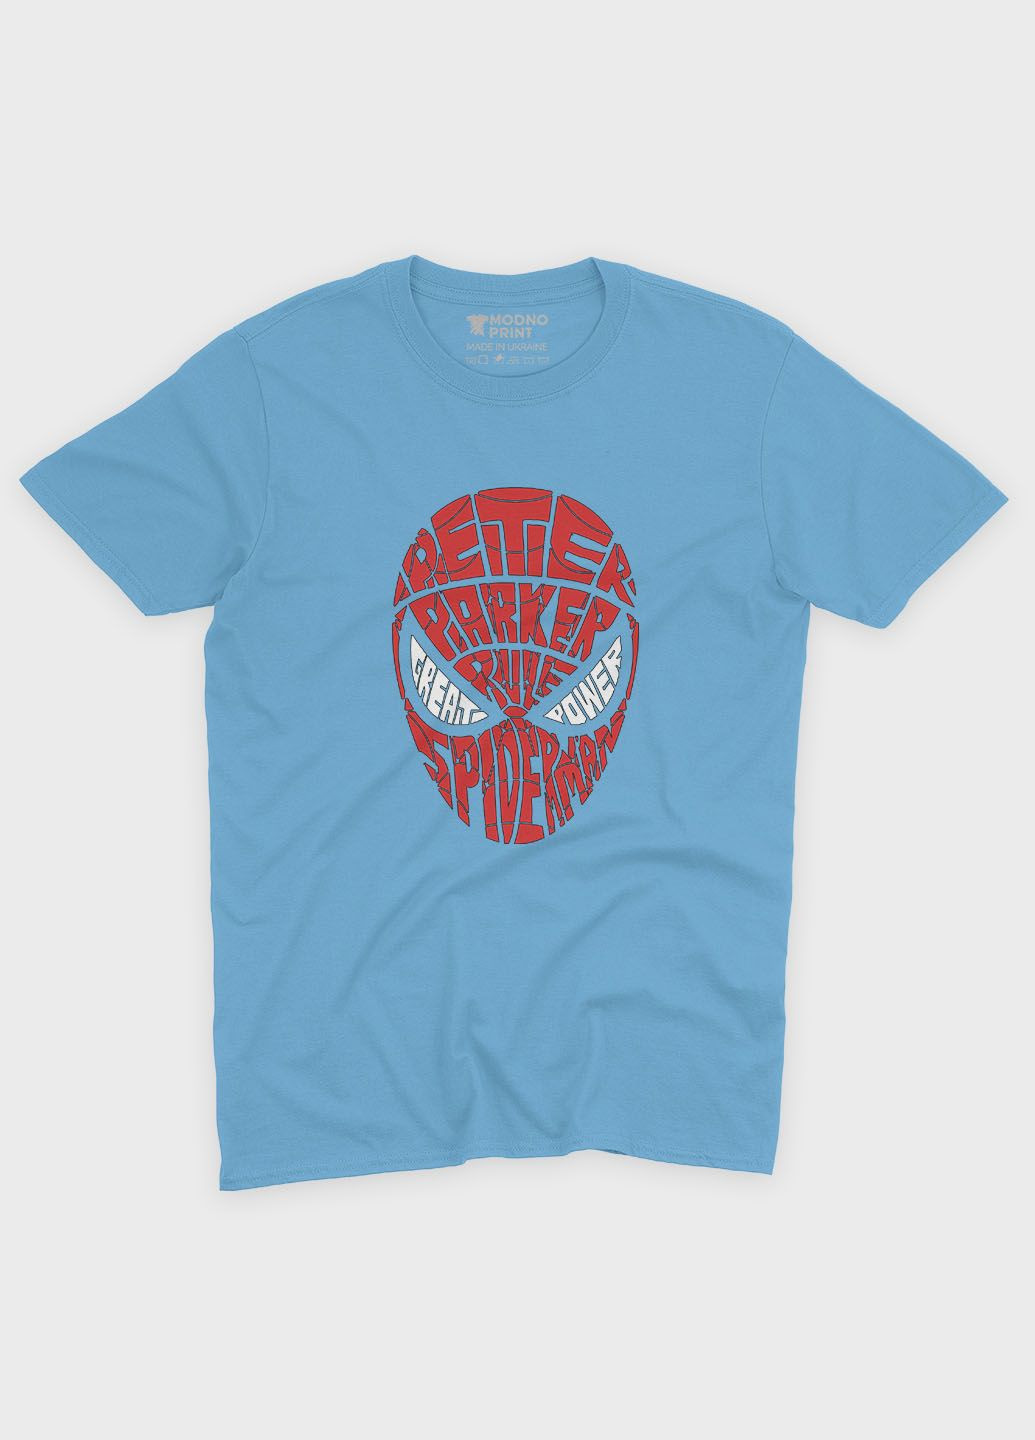 Голубая демисезонная футболка для девочки с принтом супергероя - человек-паук (ts001-1-lbl-006-014-002-g) Modno